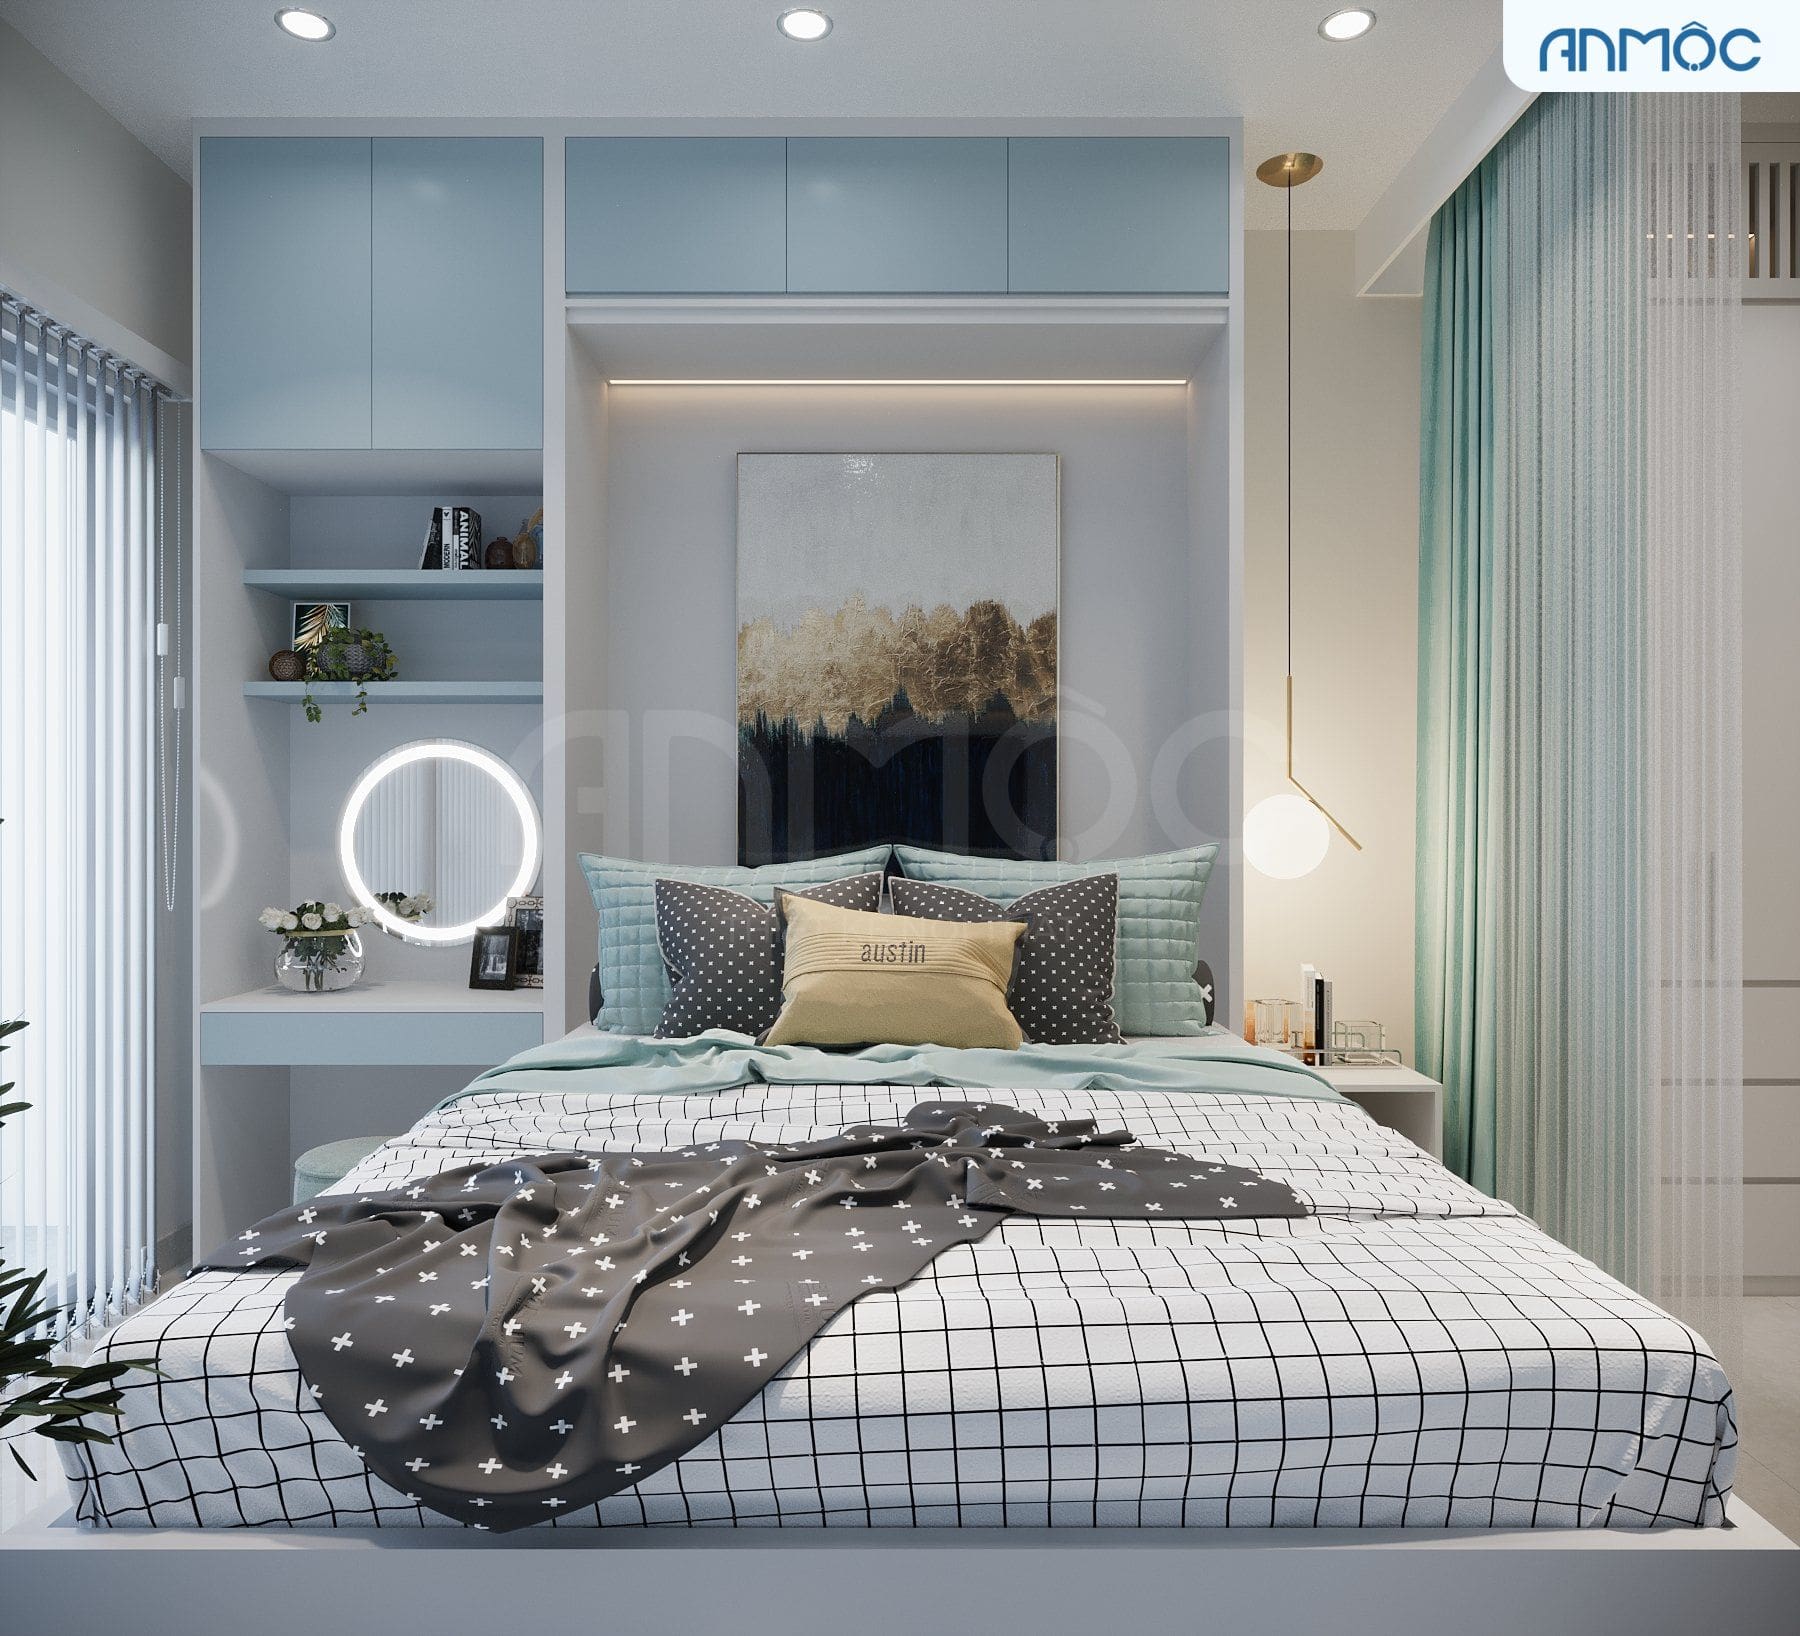 Để tận dụng diện tích tối đa căn phòng 5m2 này đã sử dụng giường Murphy và các nội thất lược giản tối đa. Gam màu sáng cũng khiến cho căn phòng trông thoáng rộng hơn so với diện tích.